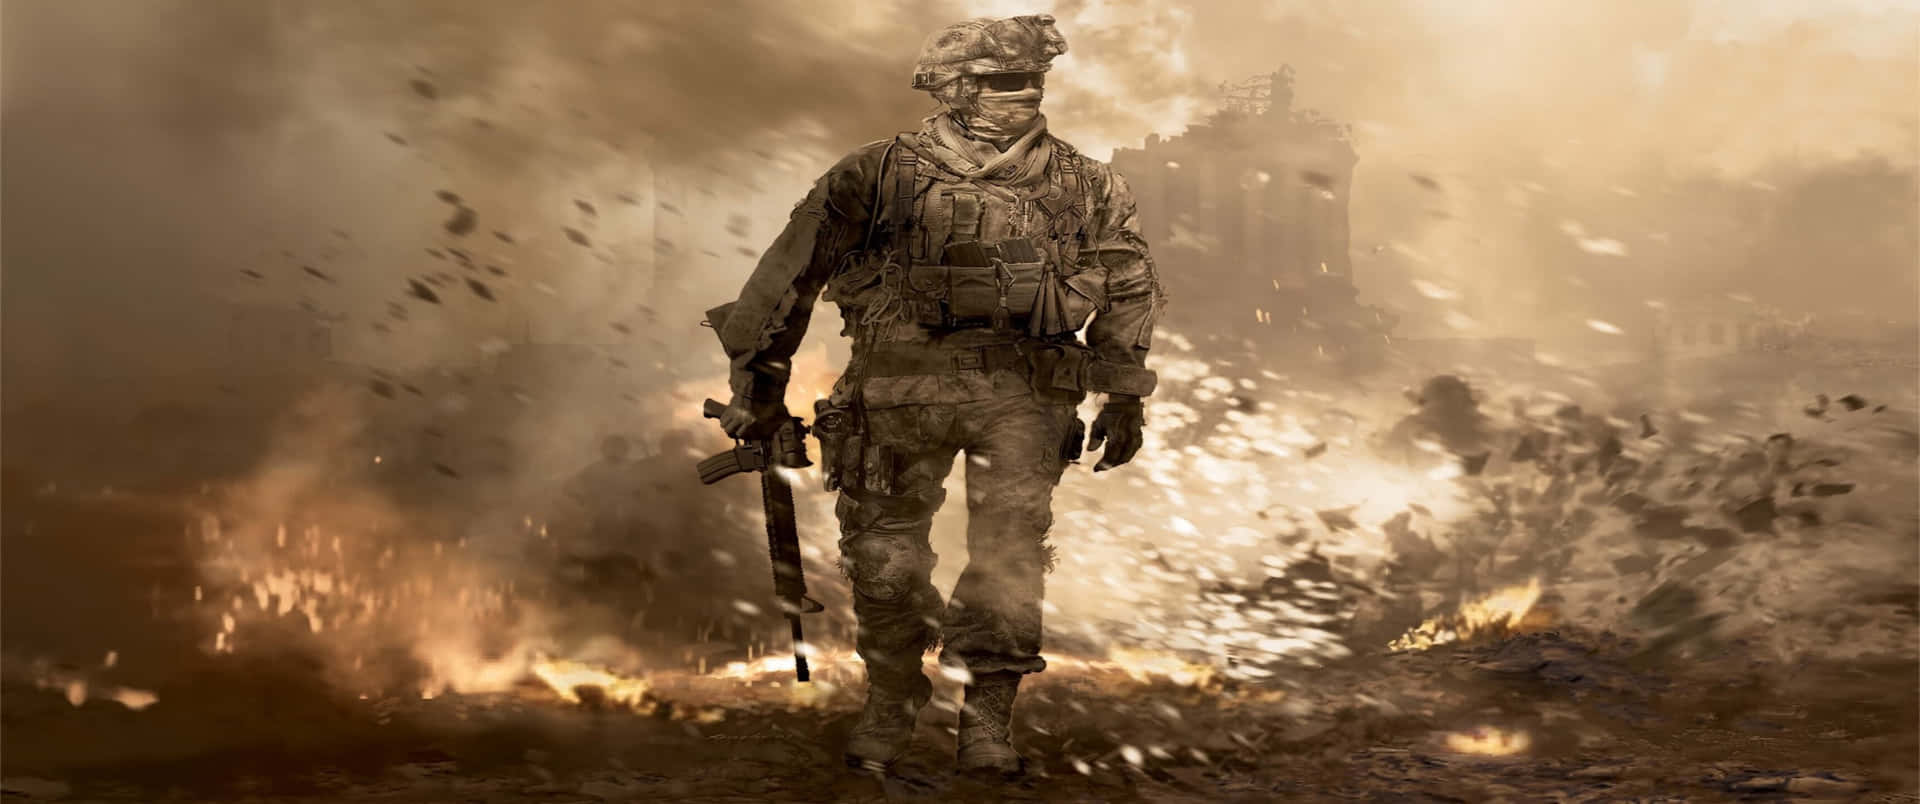 Scenadi Esplosione 3440x1440p Sfondo Di Call Of Duty Modern Warfare